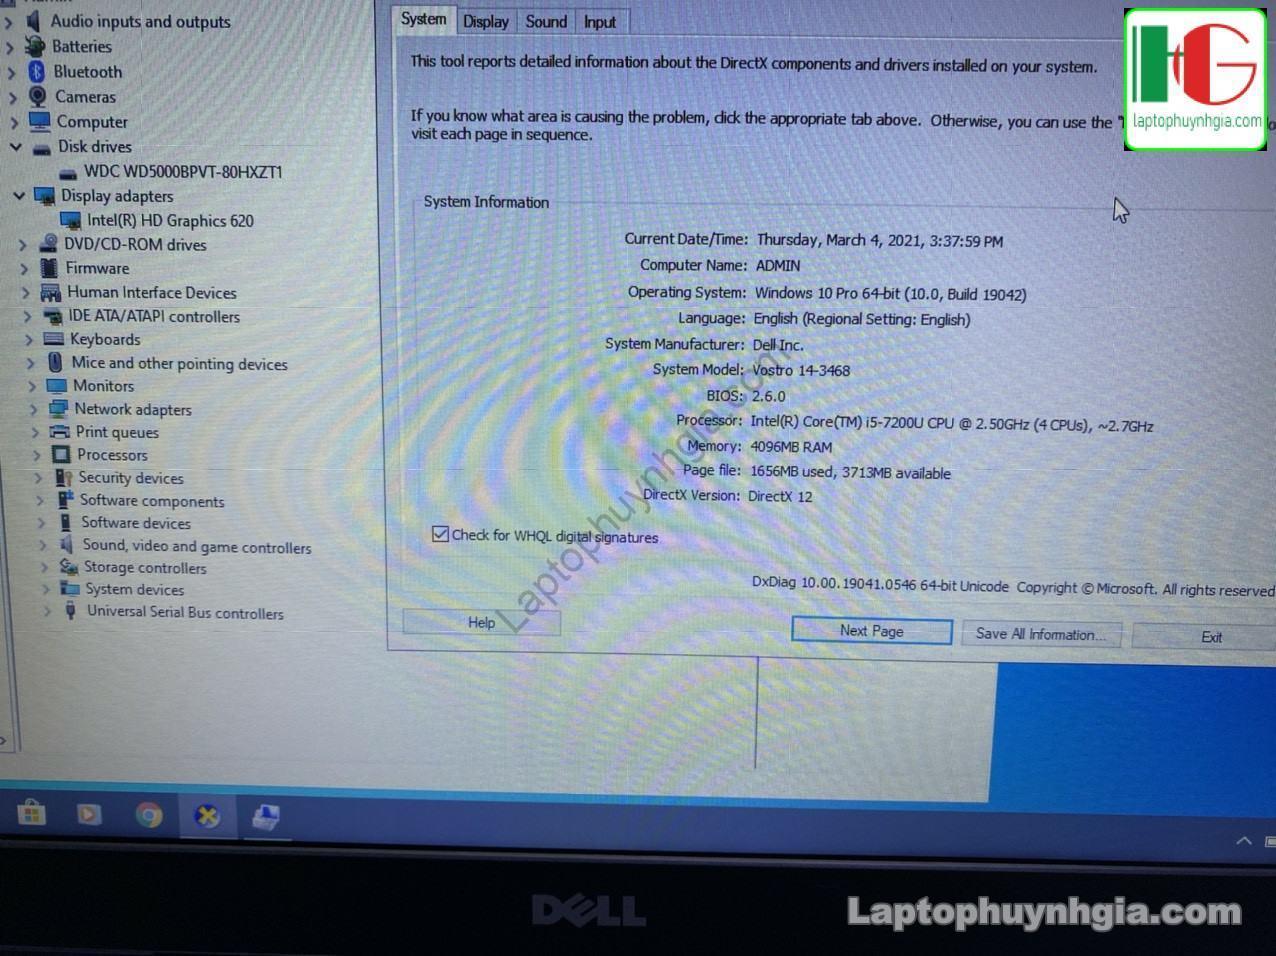 Dell V3468 I5 7200u 4G HDD 500G LCD 14 Laptophuynhgia.com 3 - Laptop Cũ Bình Dương Huỳnh Gia